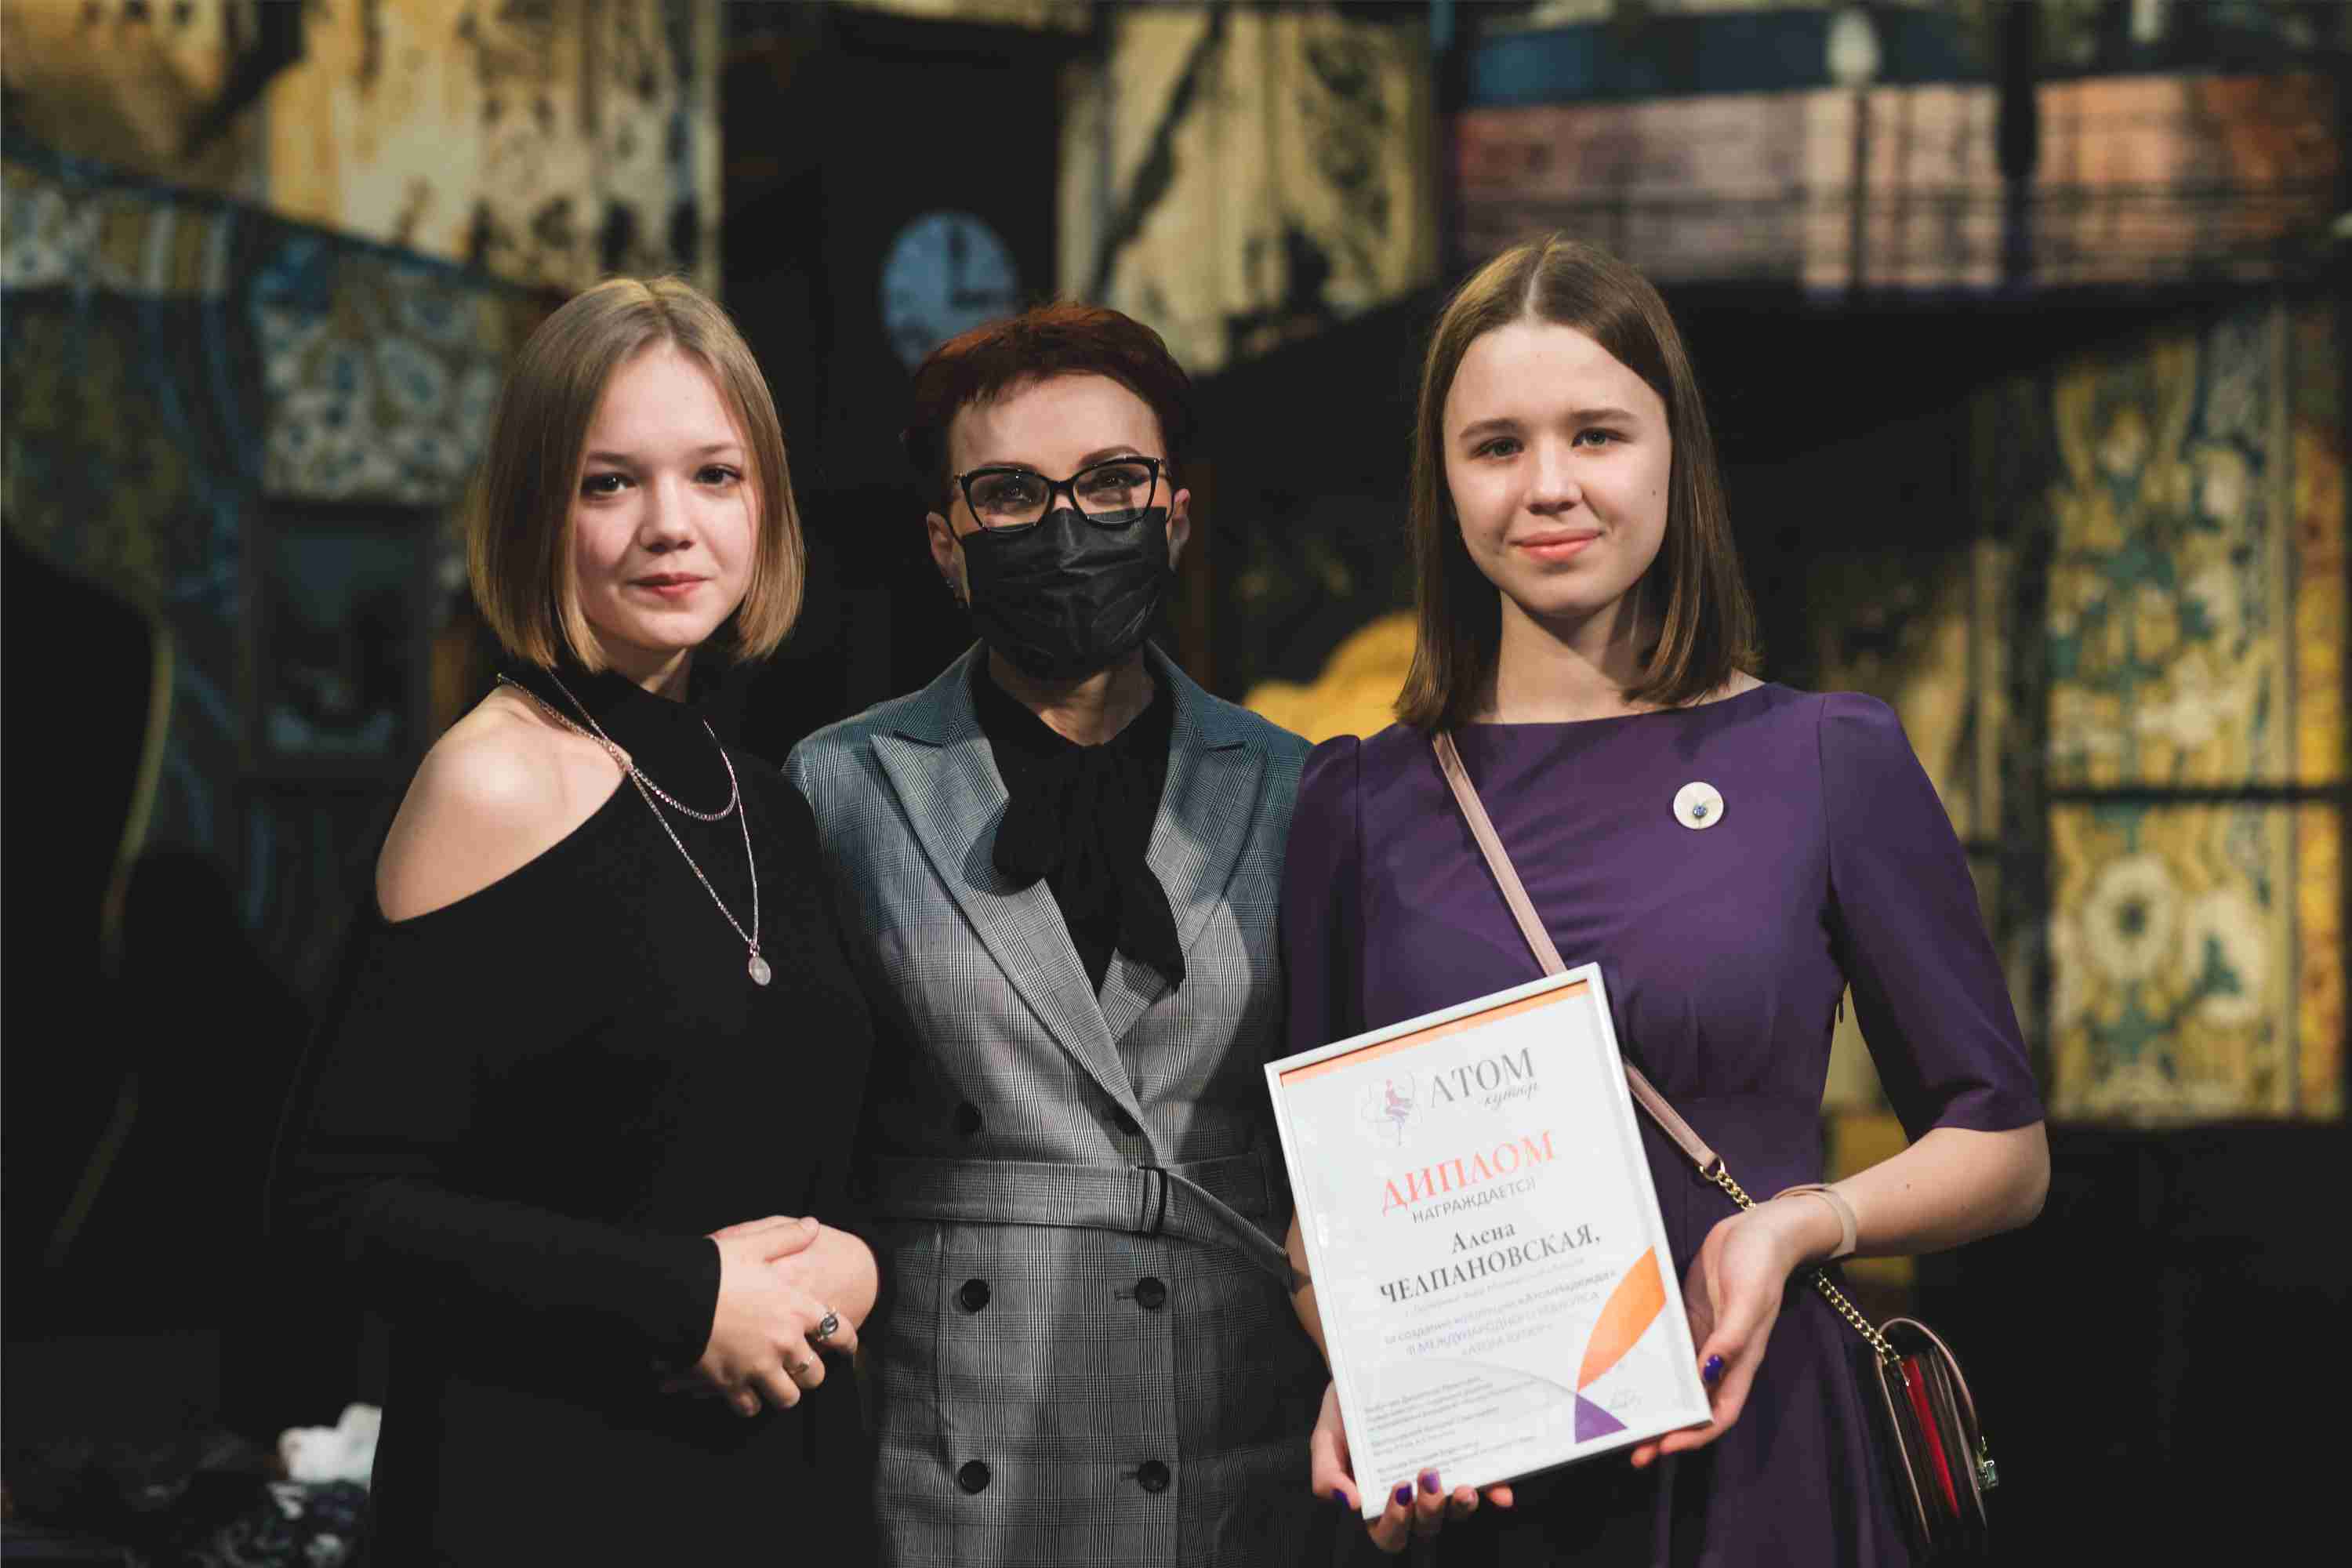 Кольская АЭС: юные звёзды Полярных Зорей приняли участие в модном гала-показе в Москве 